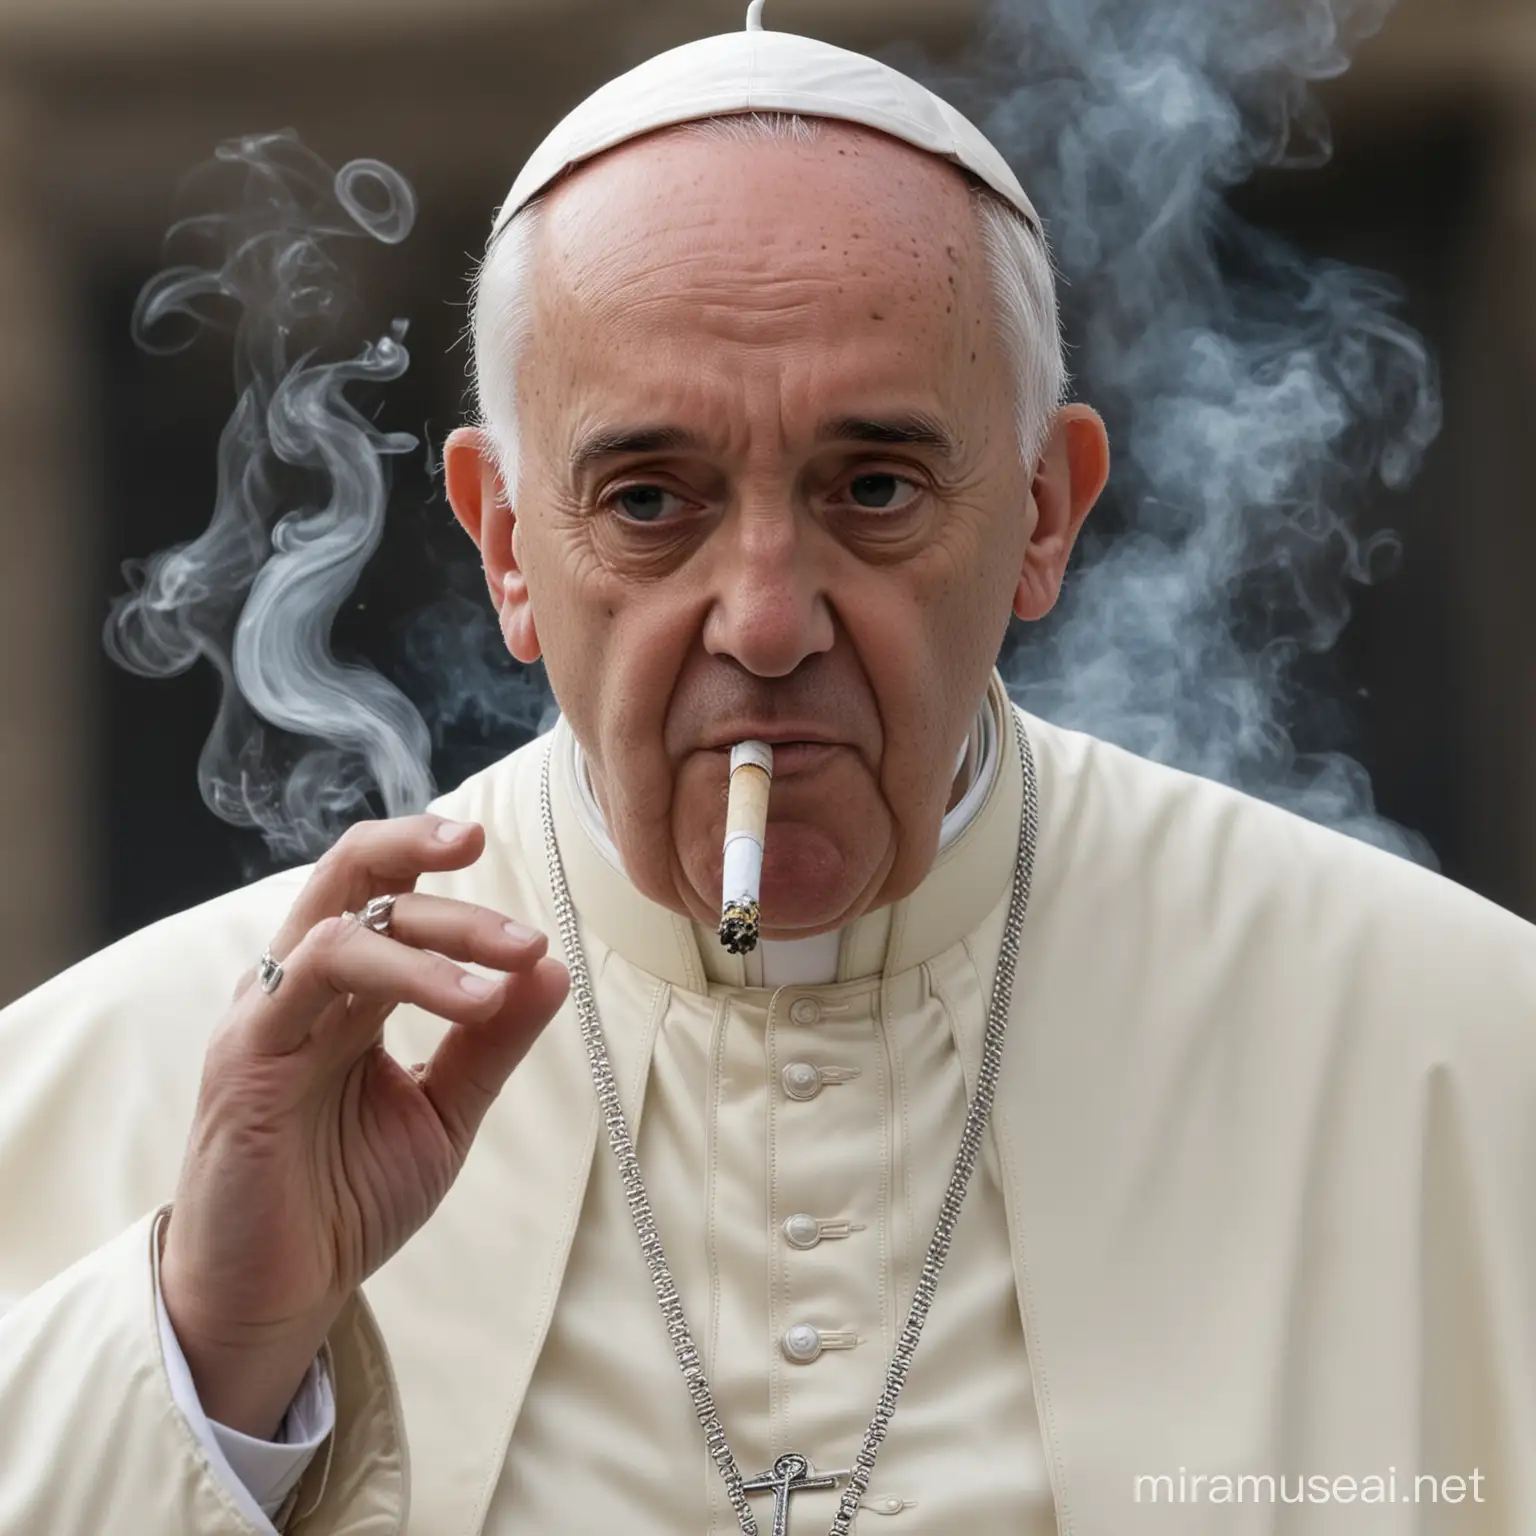 el papa francisco fumando drogas